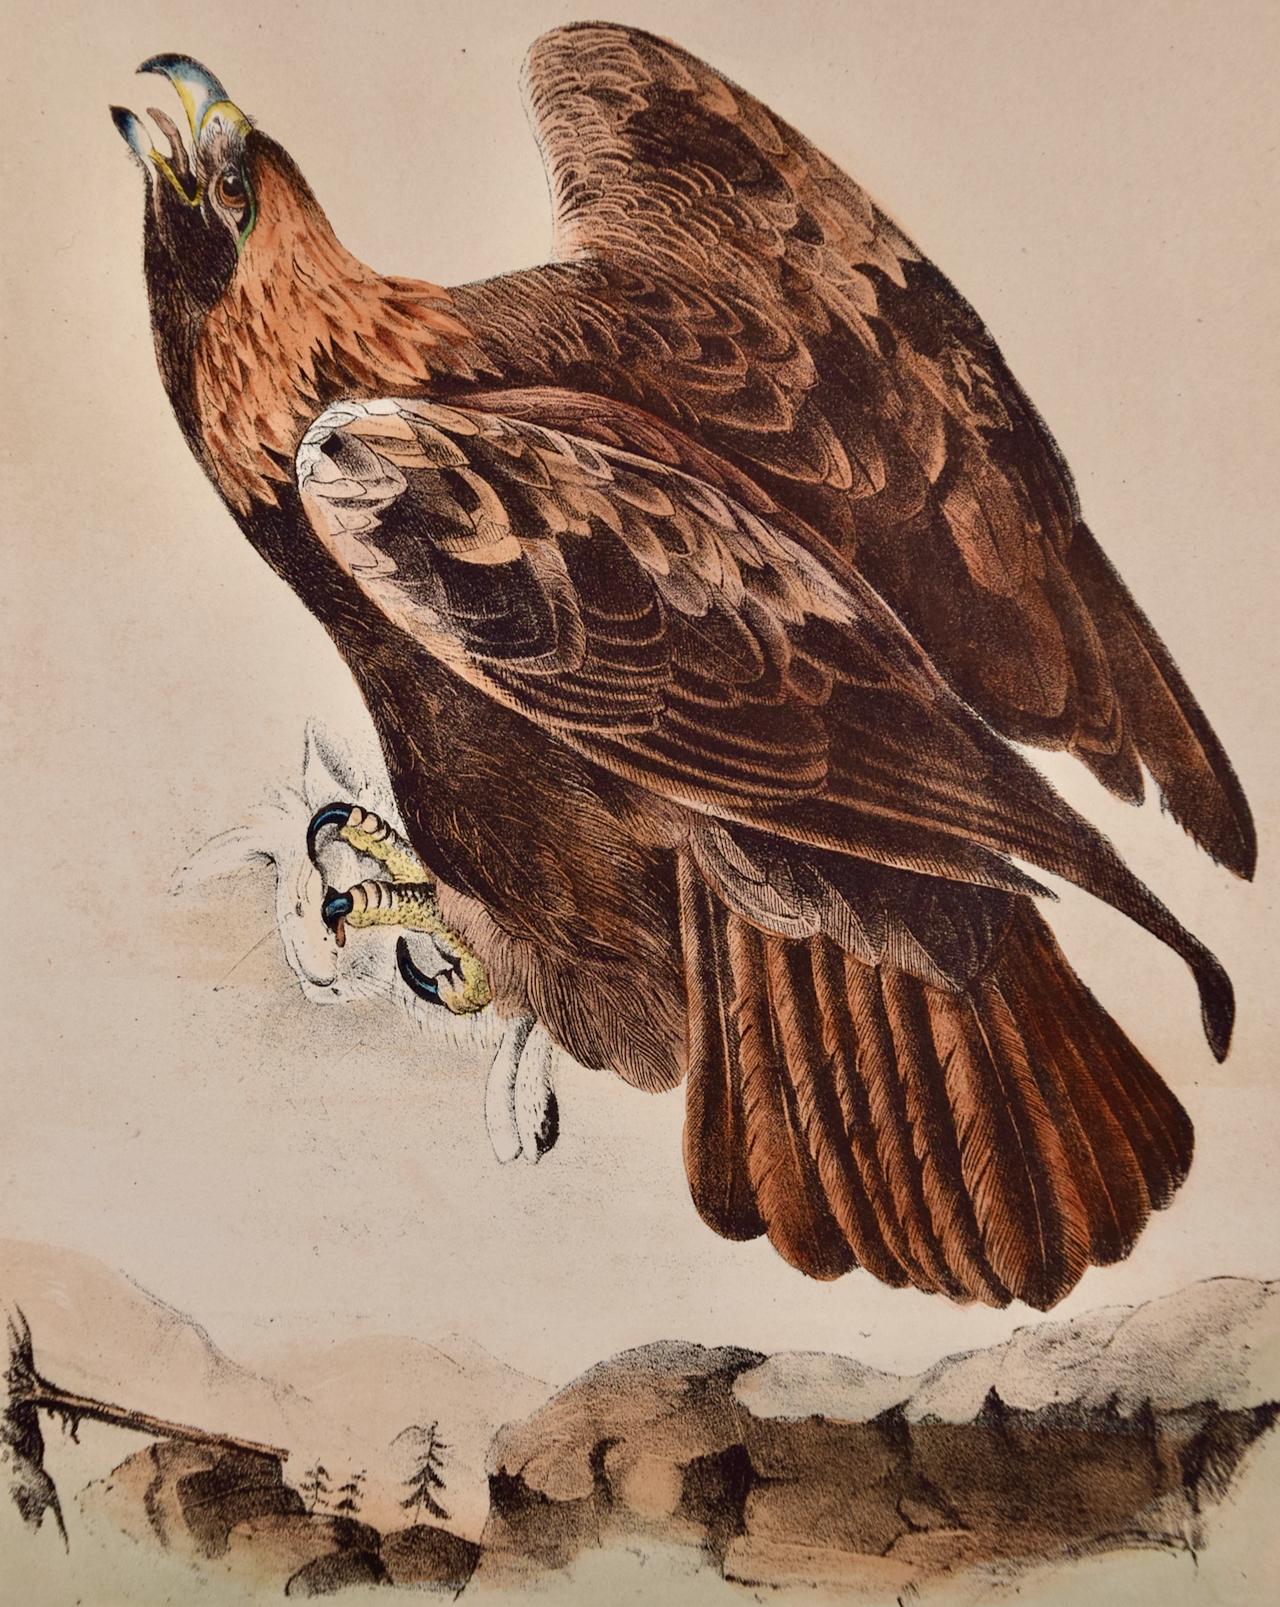 Oiseau doré : lithographie originale d'Audubon du 19e siècle colorée à la main - Print de John James Audubon